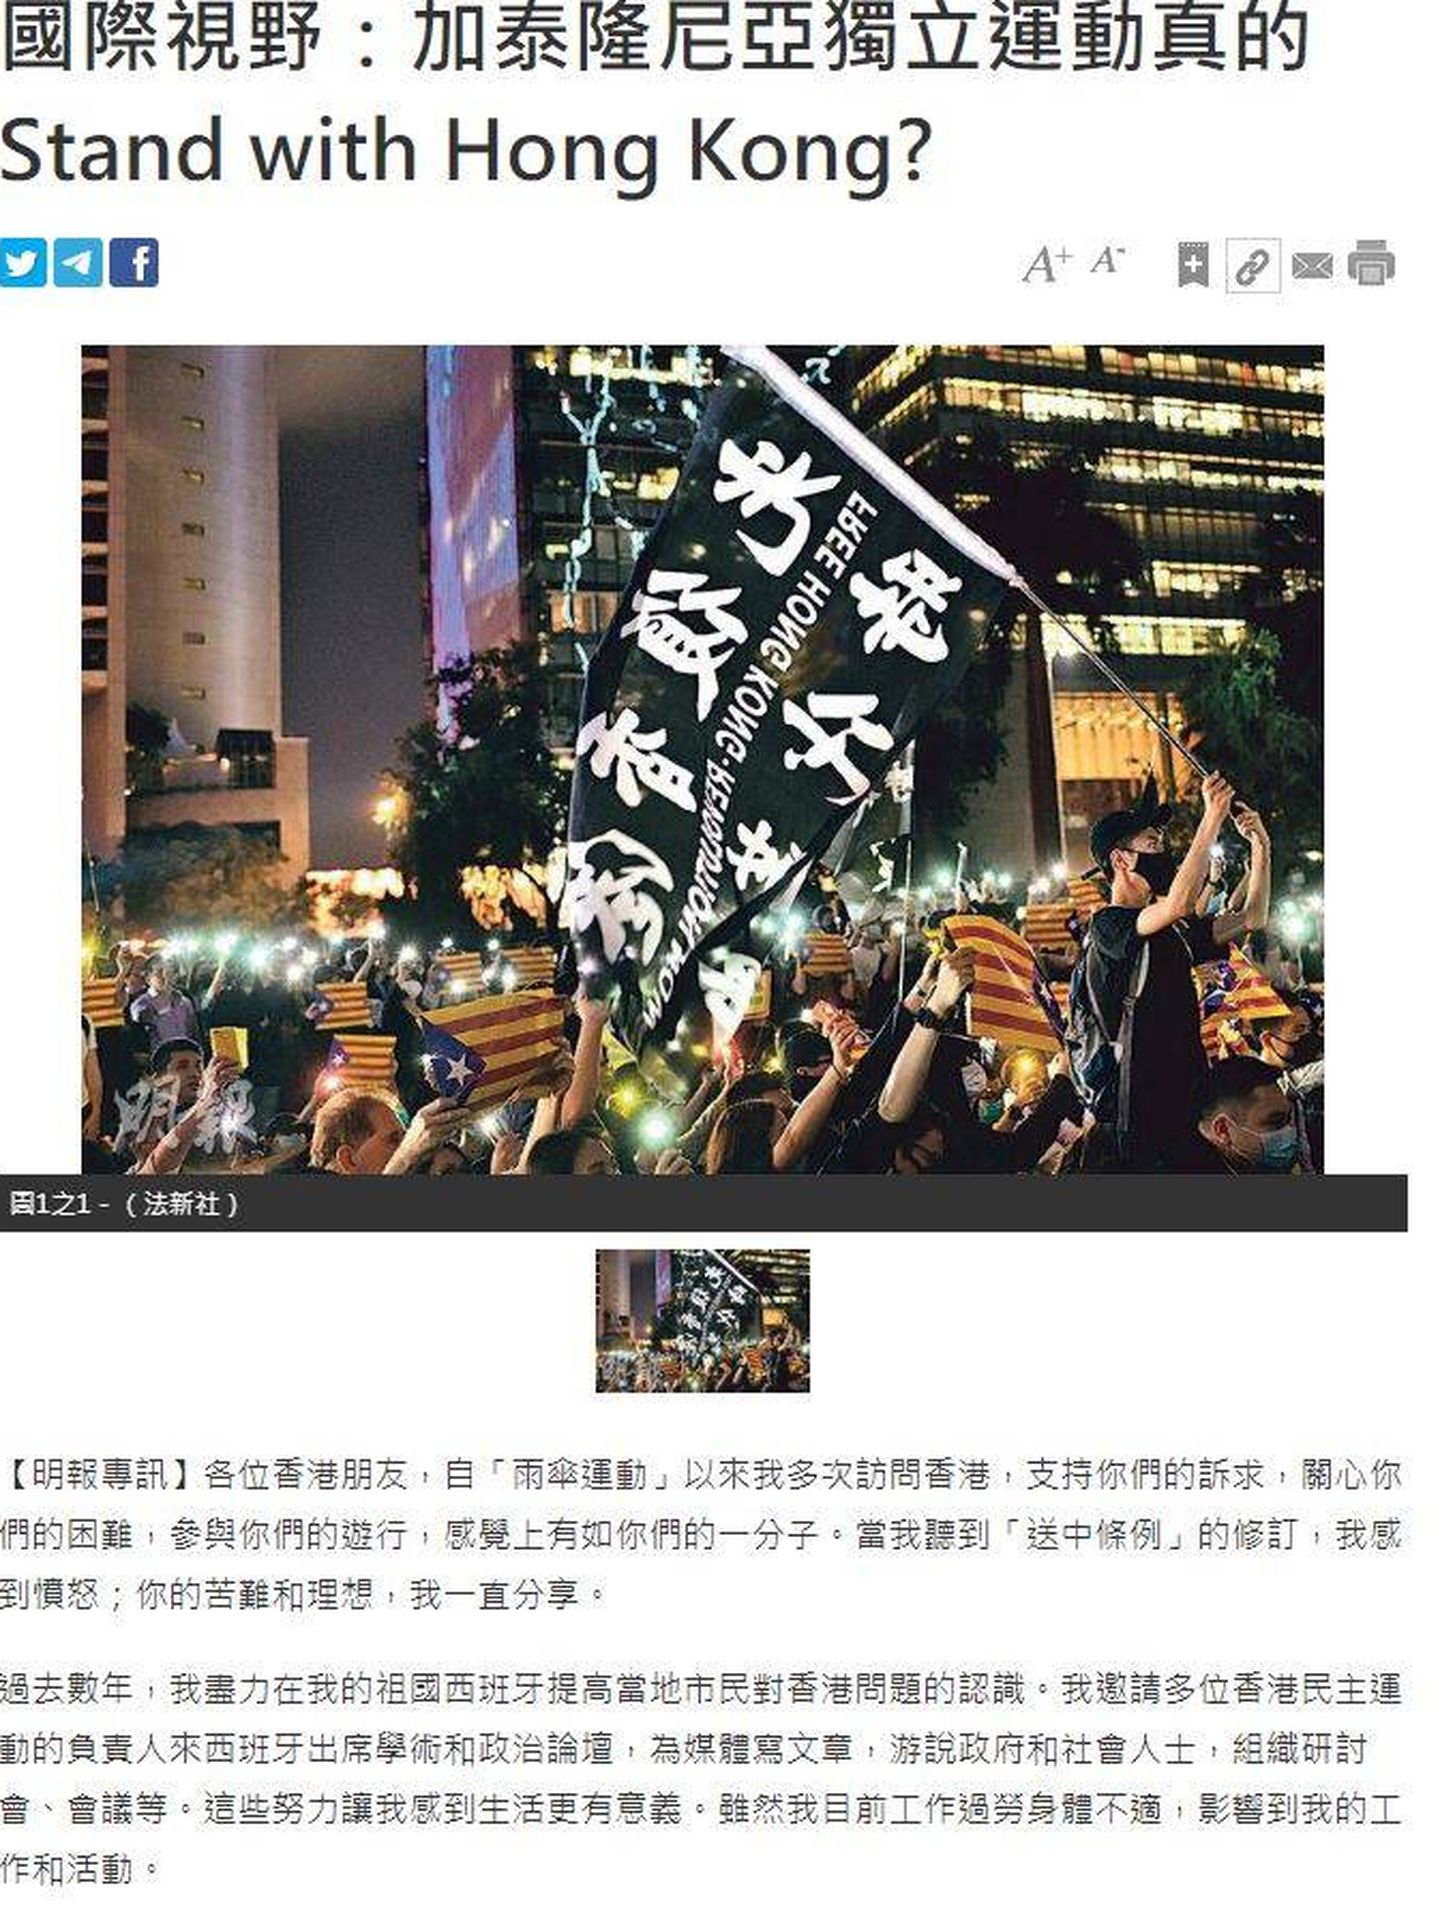 Captura del artículo, publicado en el diario hongkonés Ming Pao